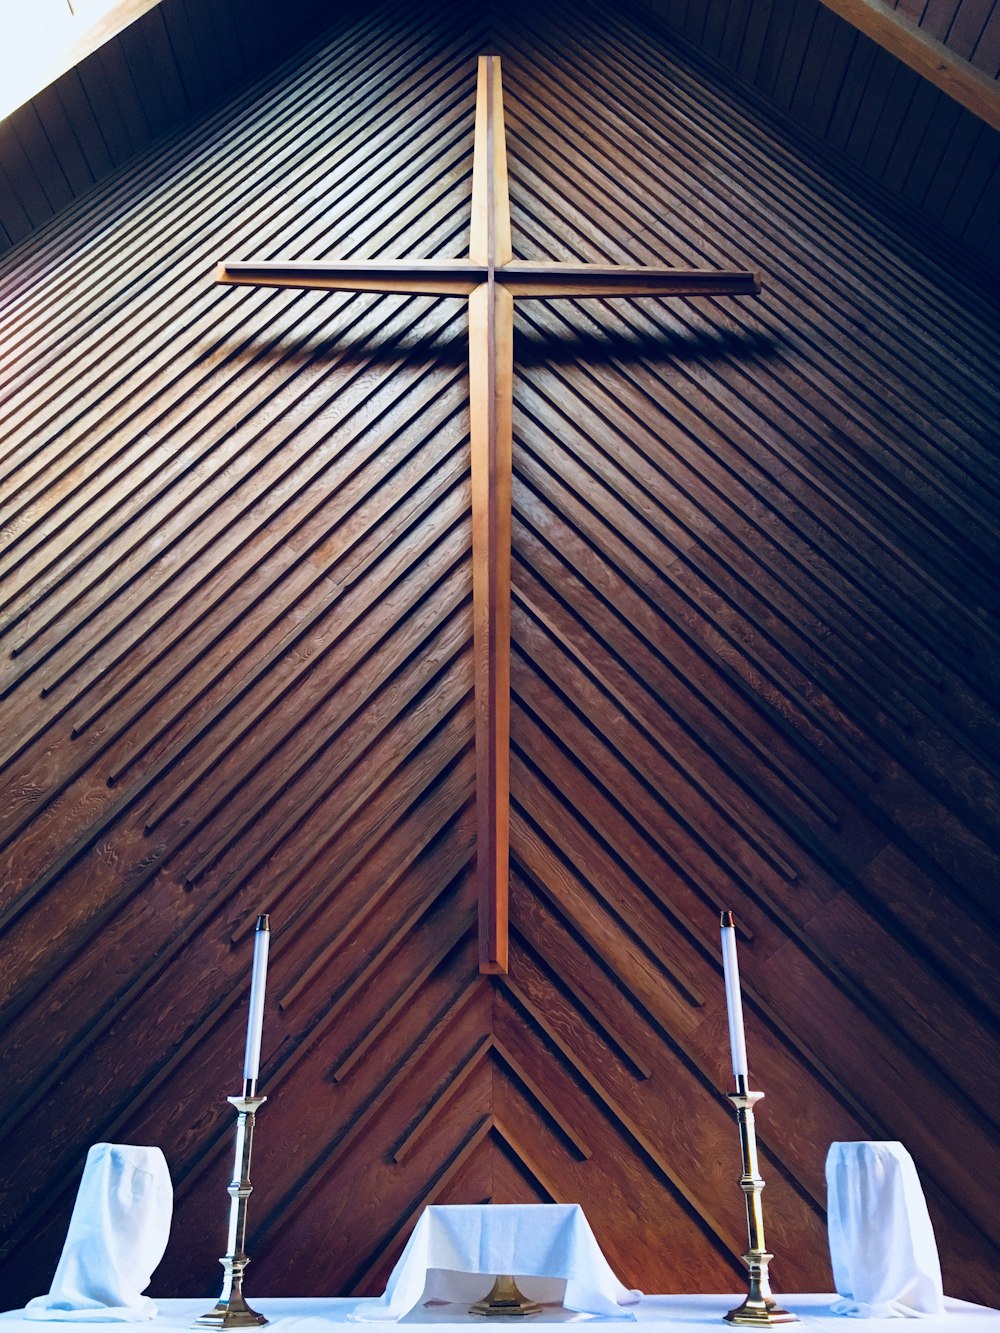 Cruz marrón en el altar